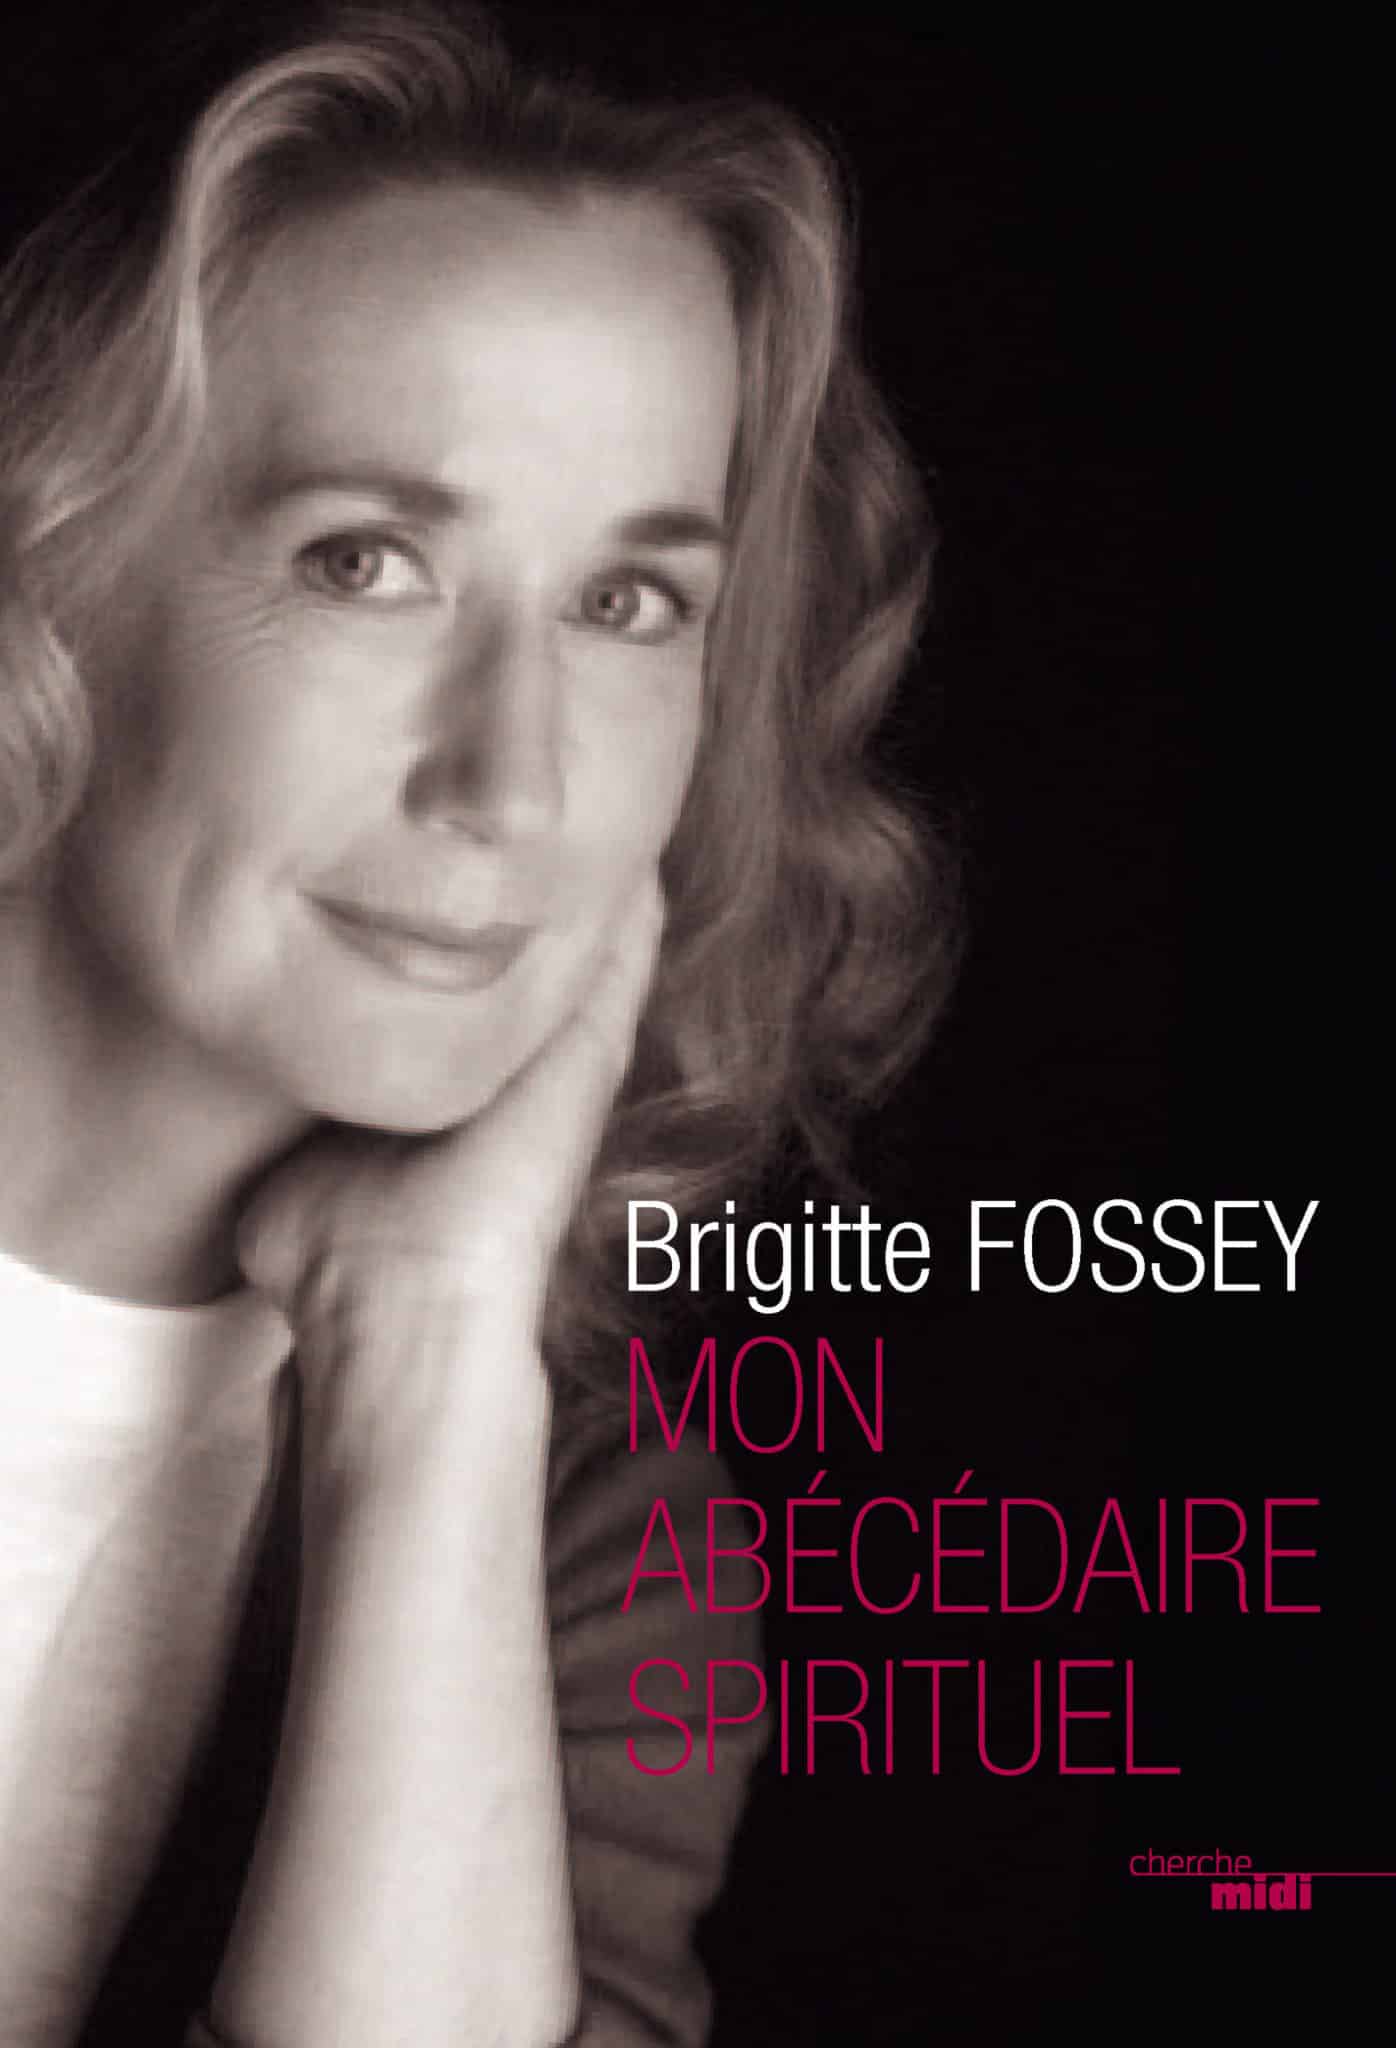 Interview Brigitte Fossey - Agir par amour